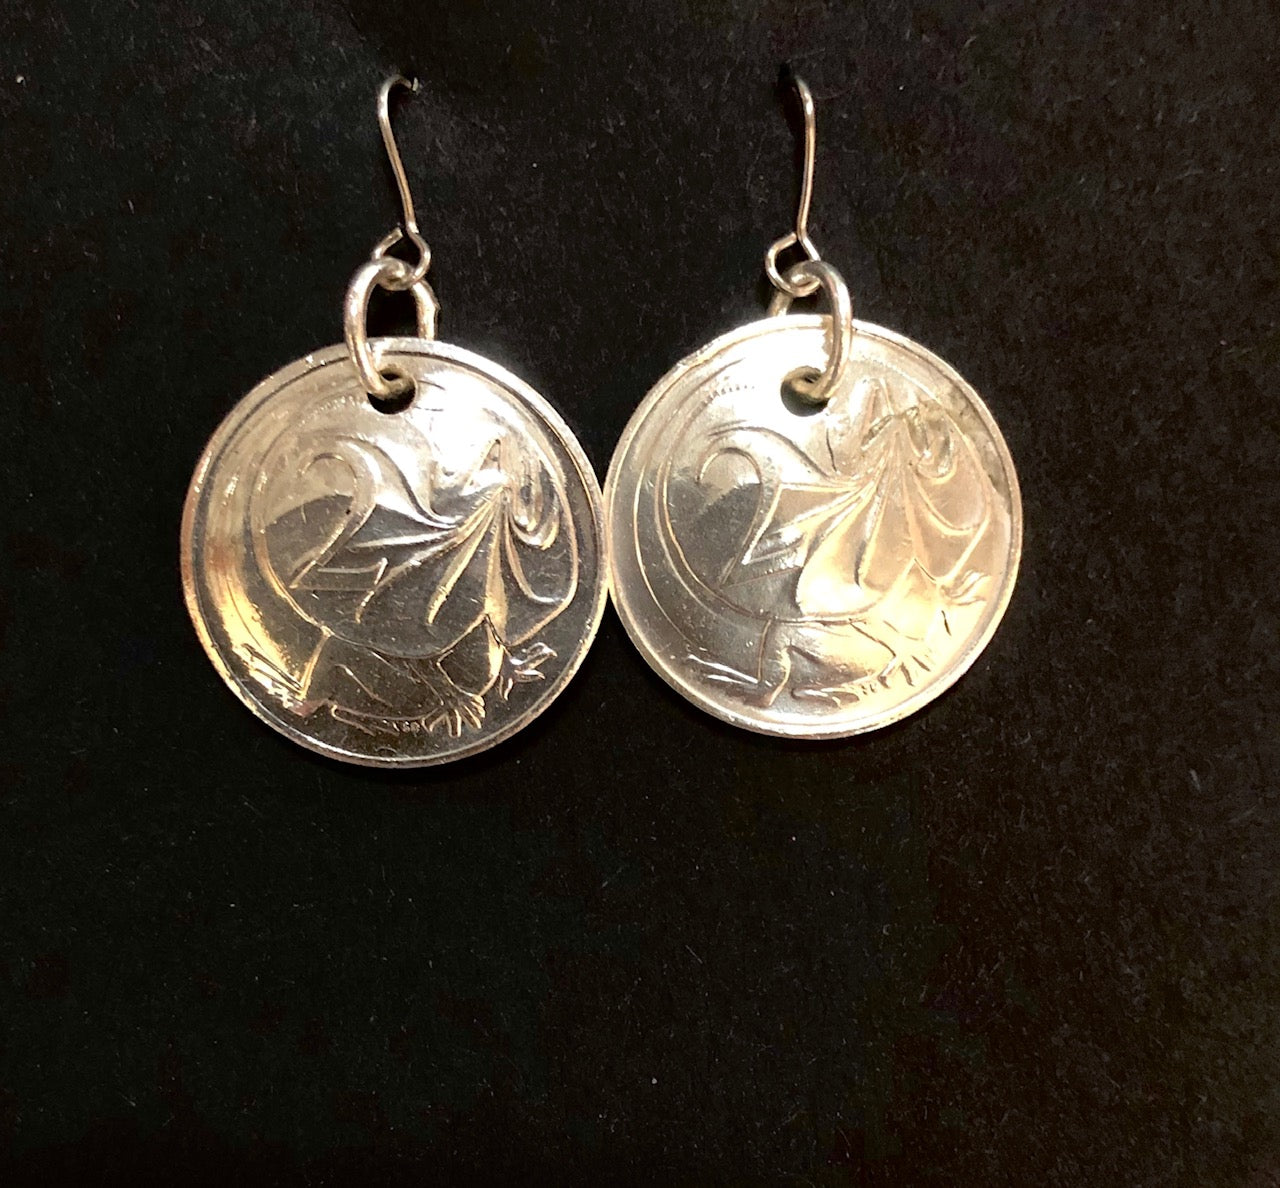 2c silver earrings